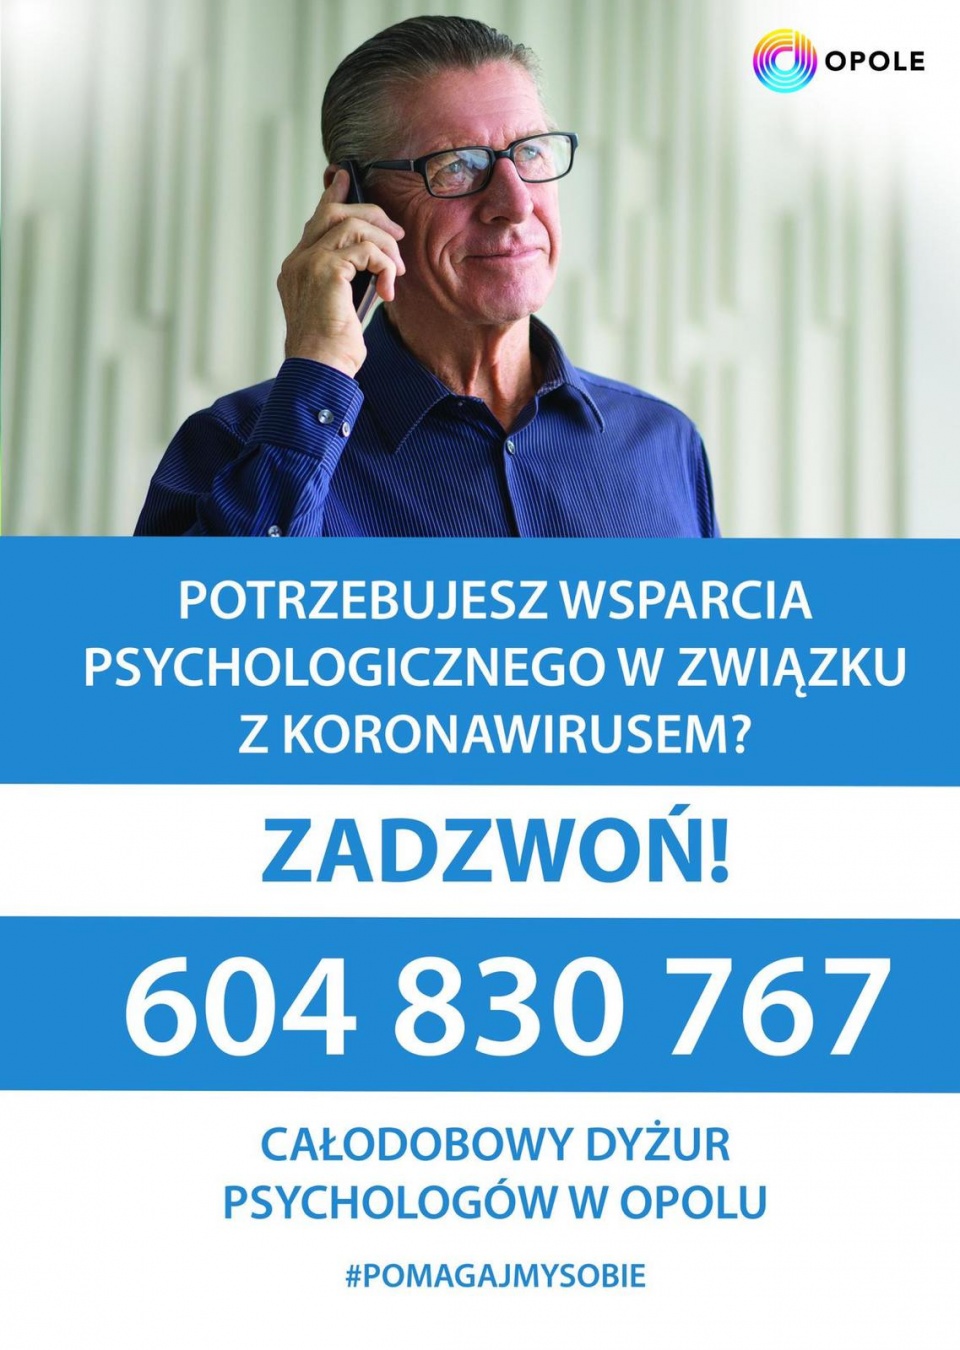 Opole uruchomiło dla mieszkańców całodobową telefoniczną pomoc psychologiczną